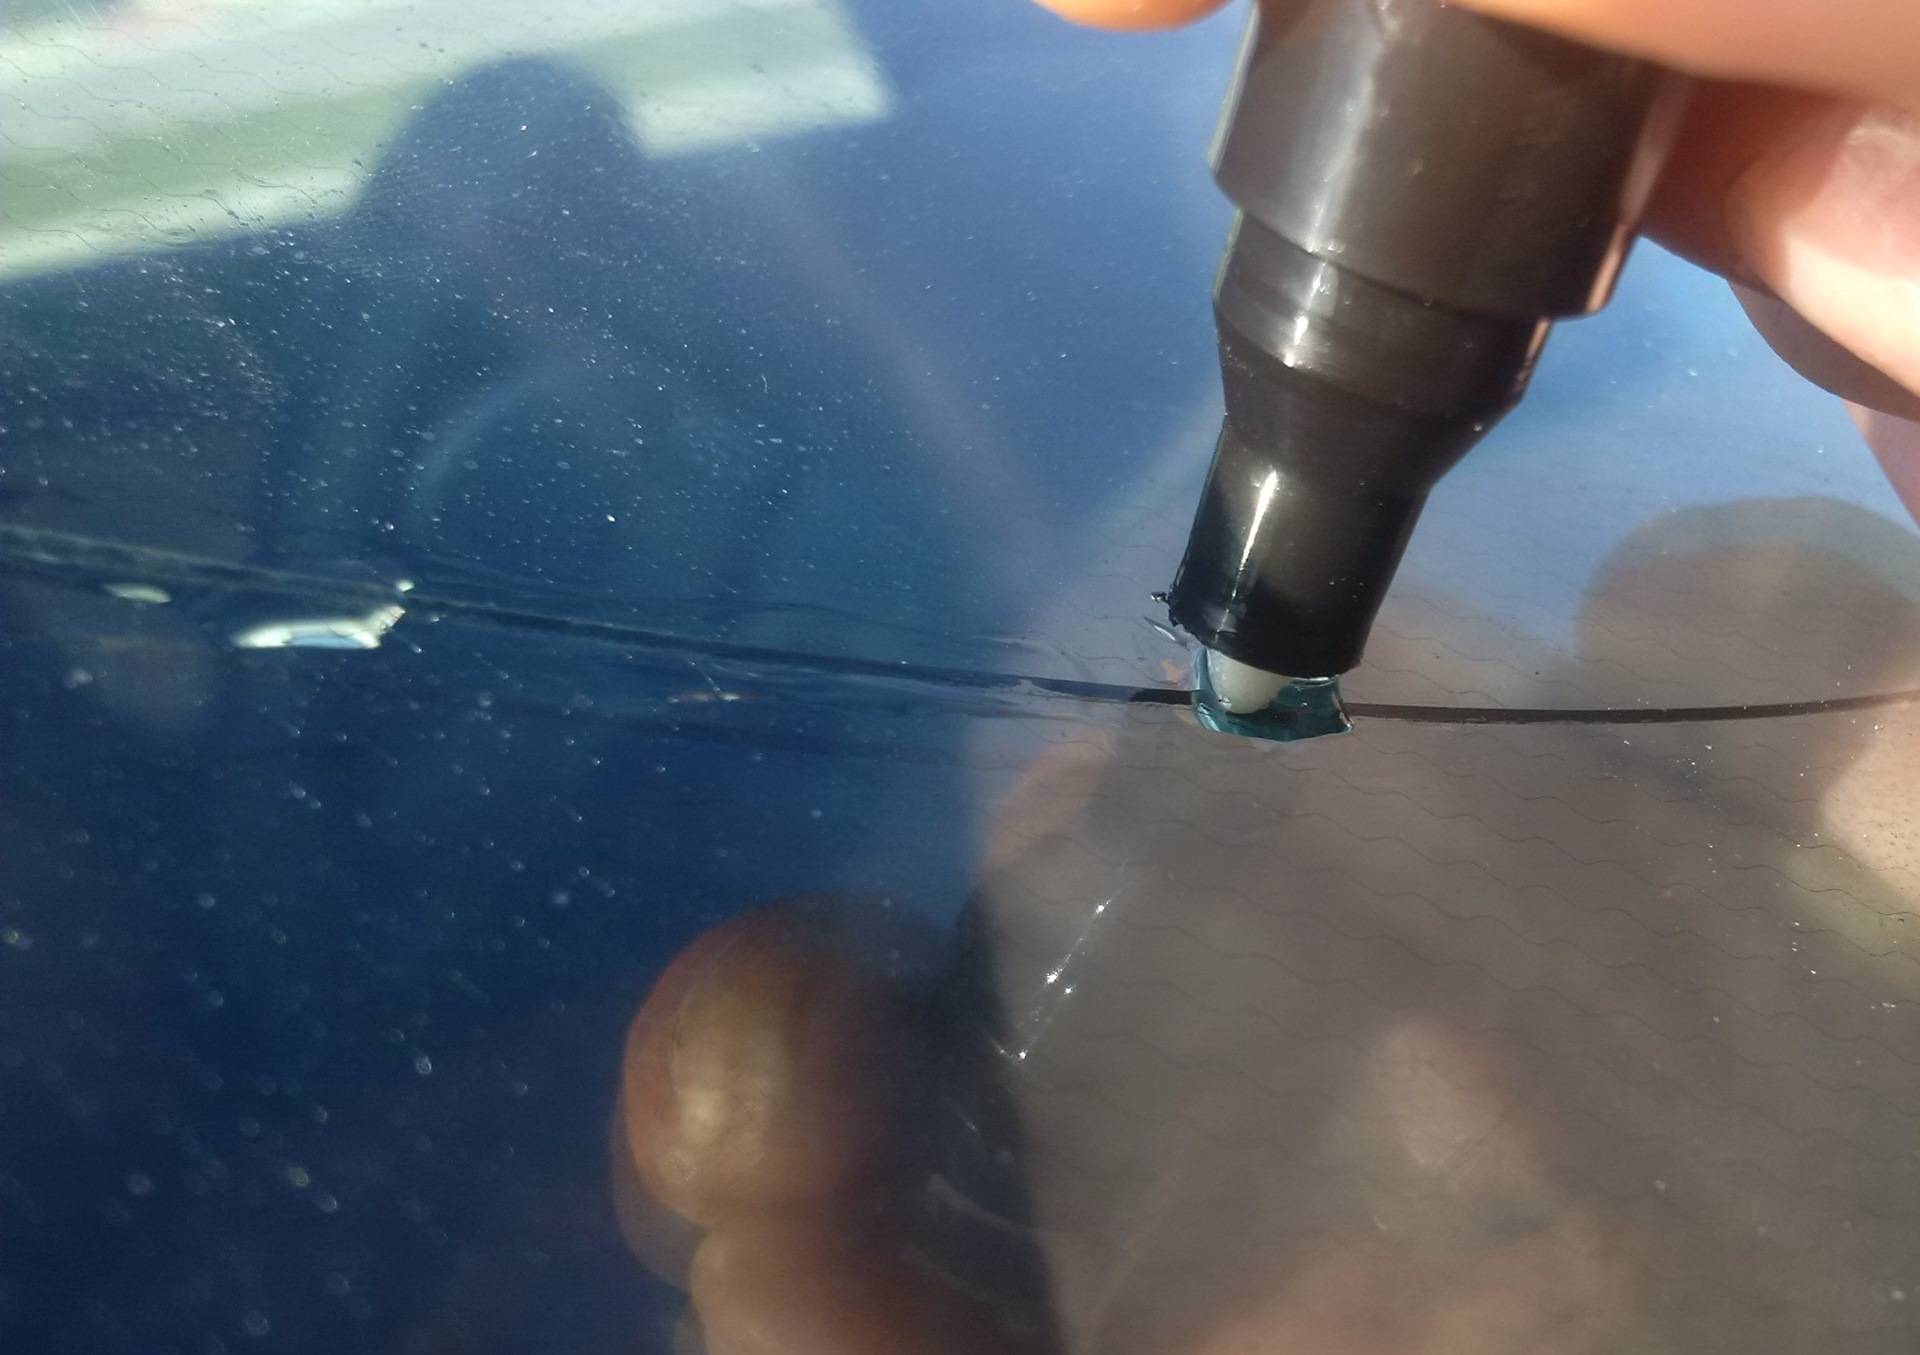 Реально ли убрать скол с лобового стекла и что для этого нужно?